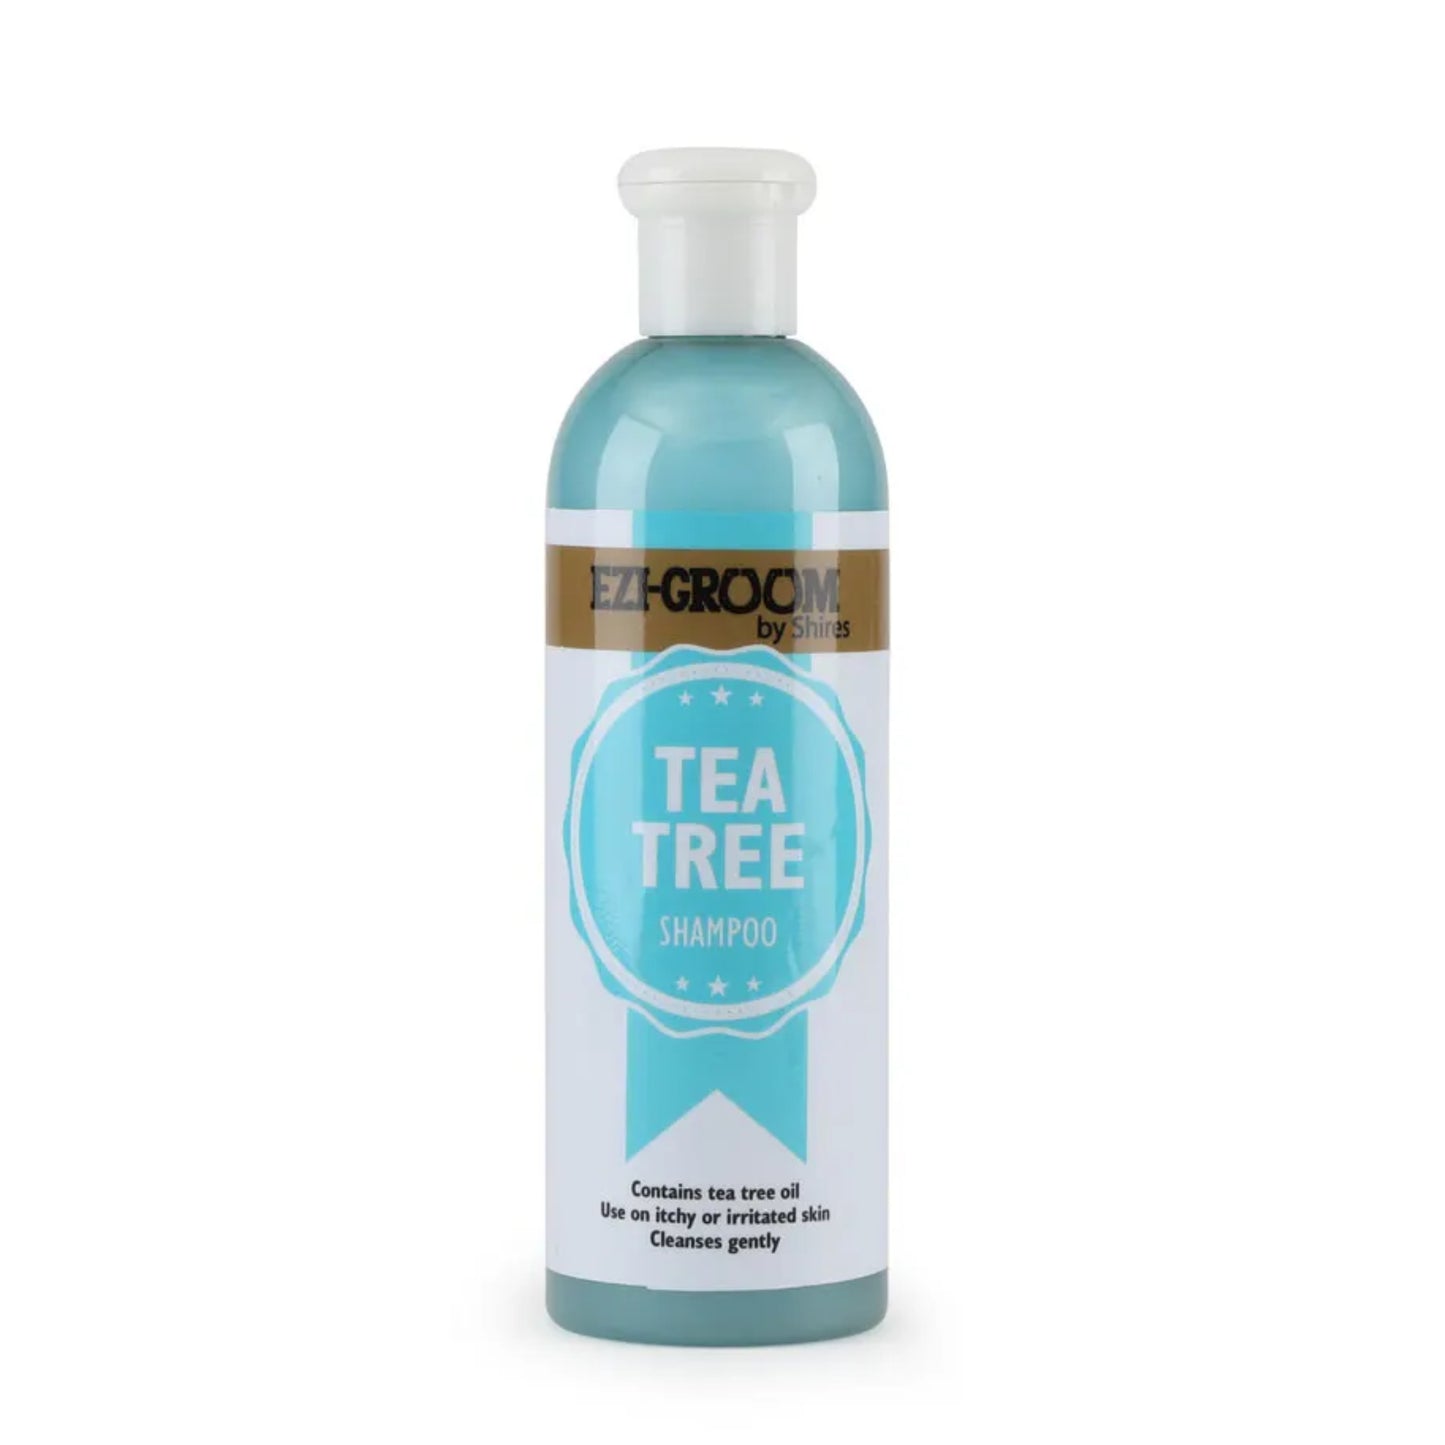 Ezi-Groom Tea Tree Shampoo